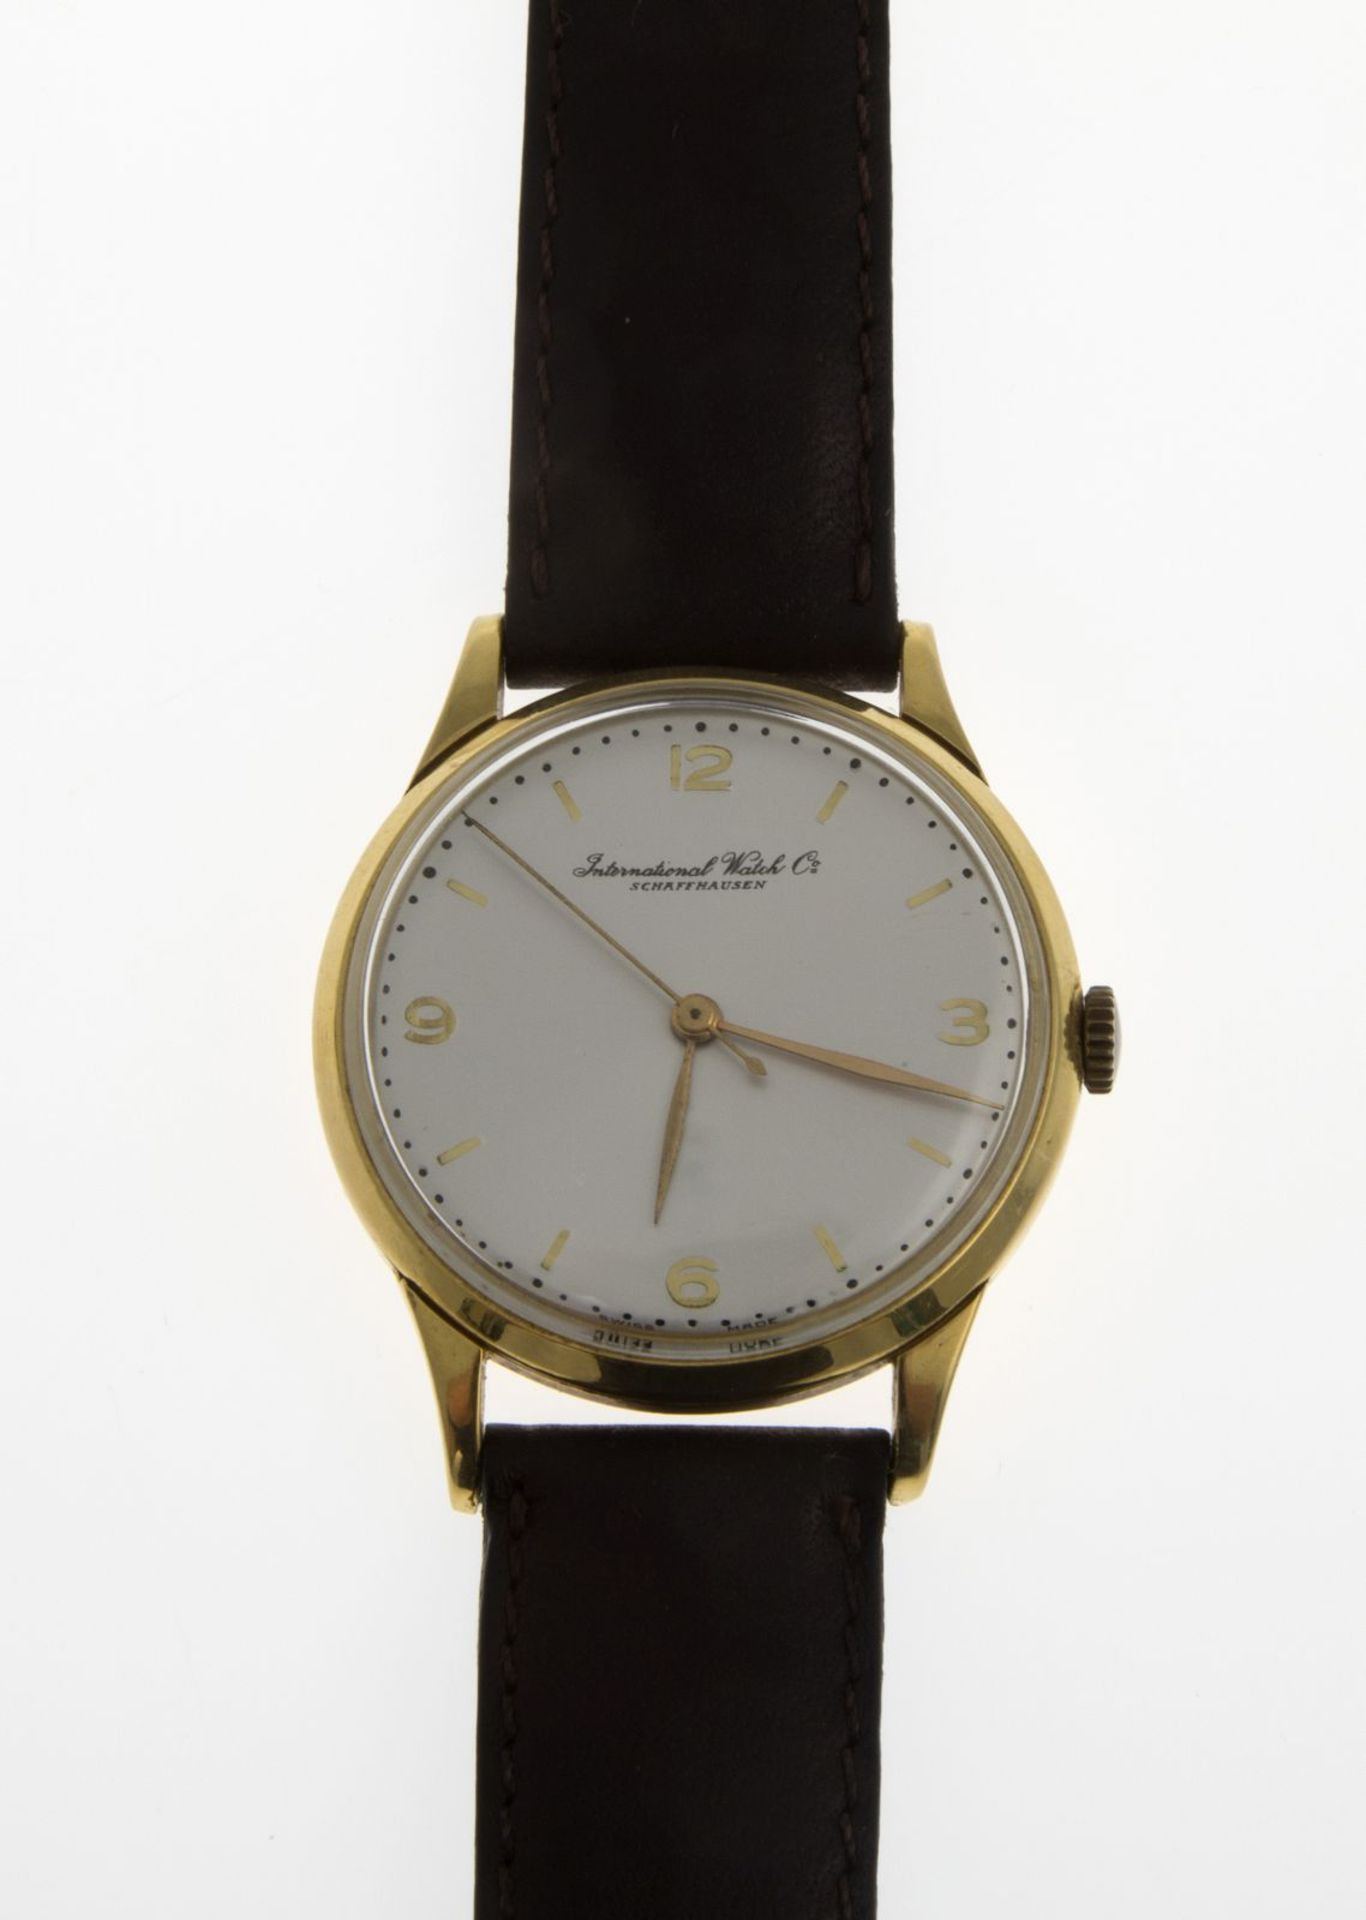 Elegante IWC-ArmbanduhrRundes Gehäuse aus Gelbgold 750. Plexiglas. Versilbertes Zifferblatt mit - Bild 2 aus 3